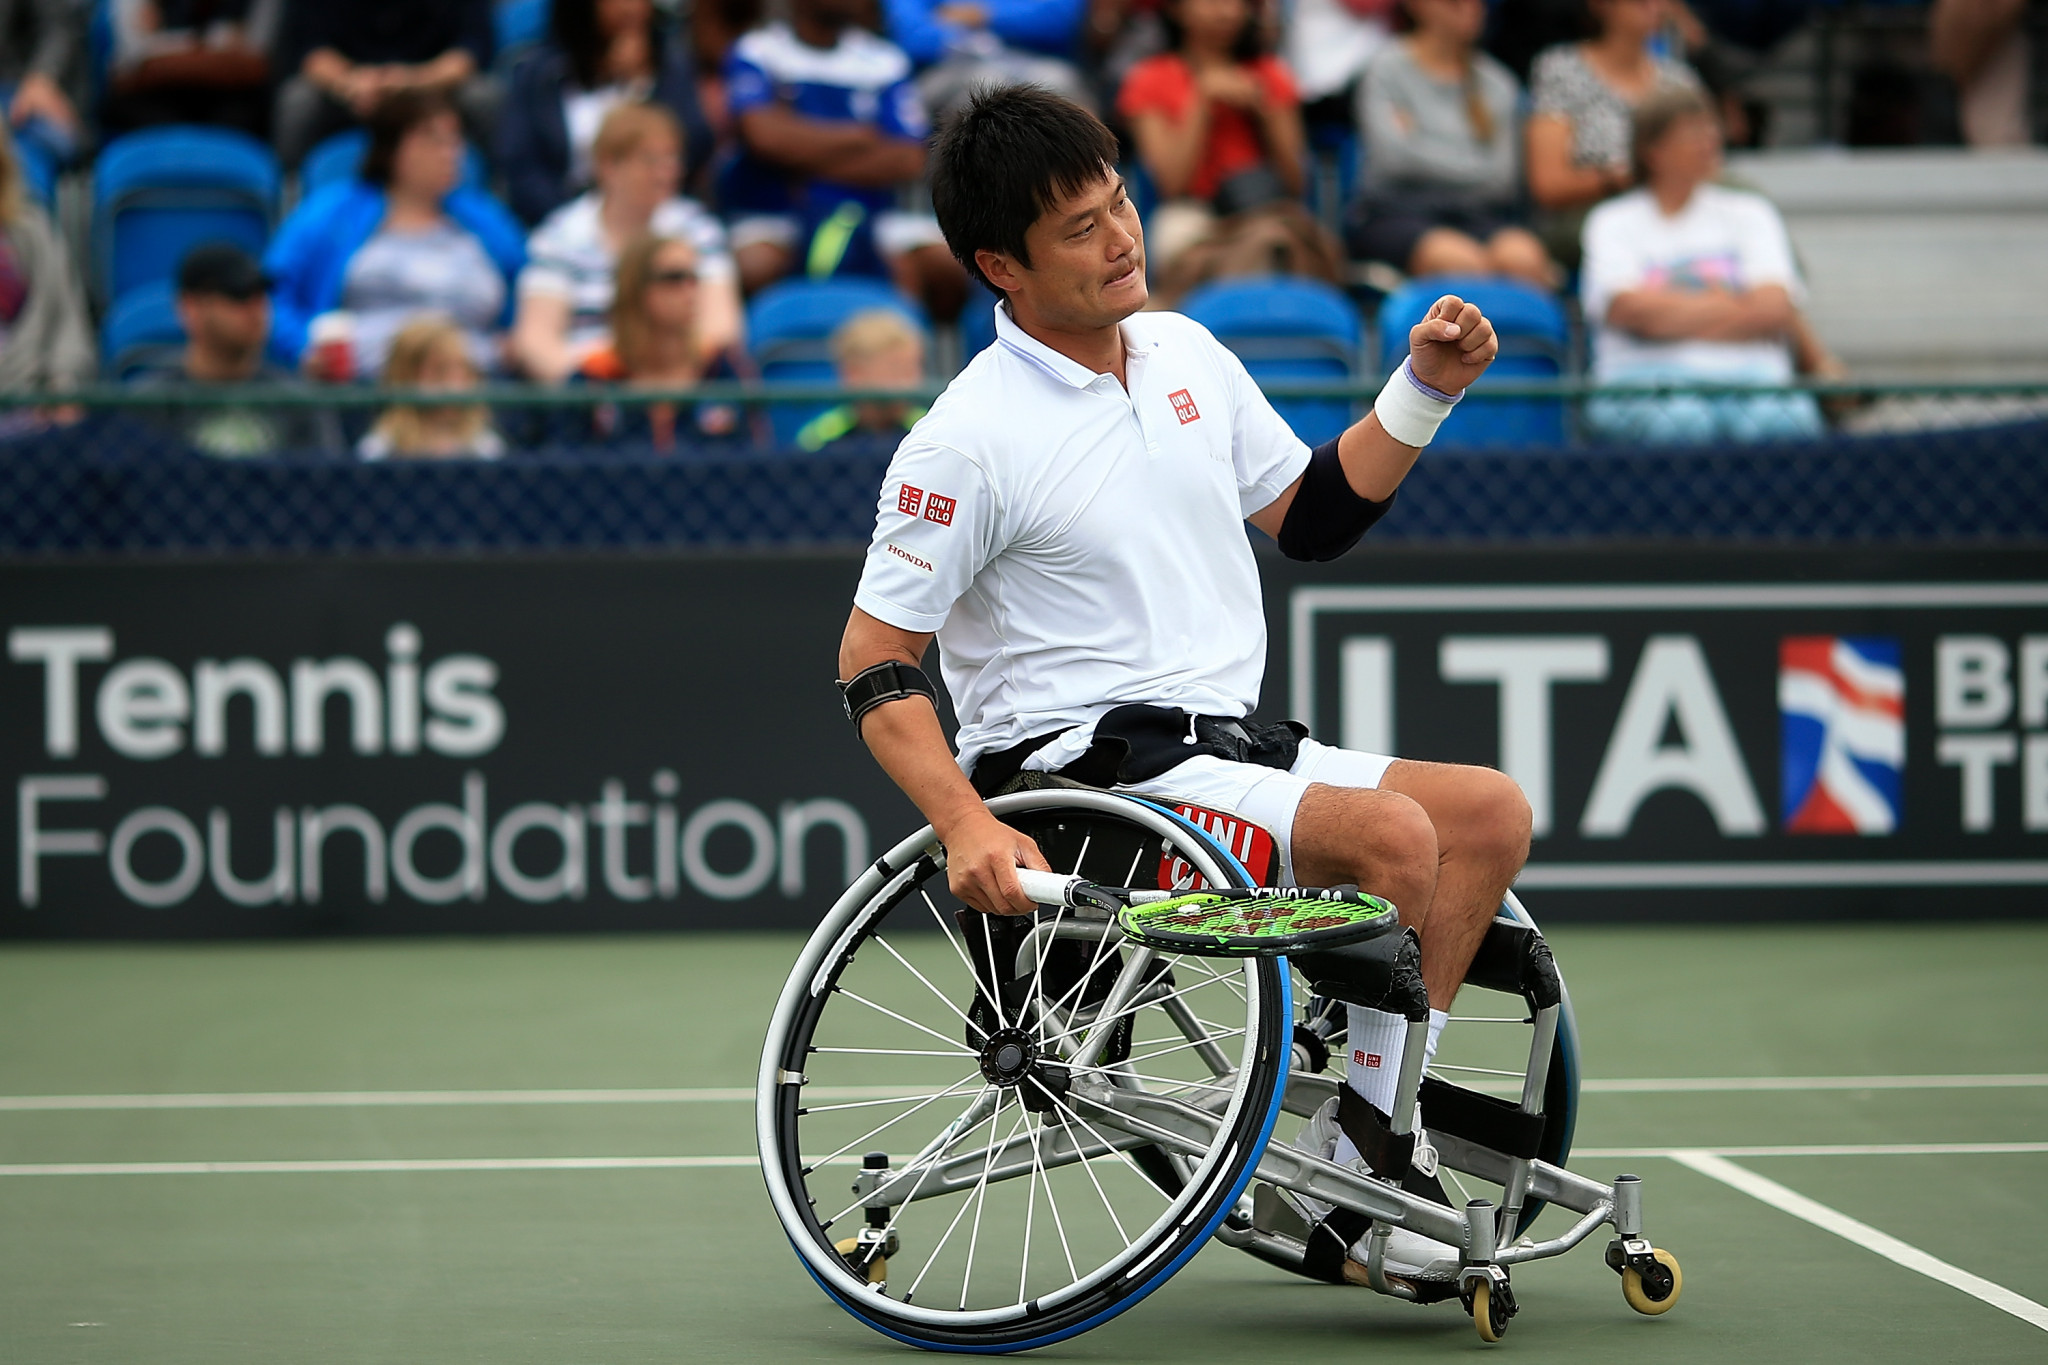 Kunieda defeats rival Reid in ITF Japan Open quarter-final